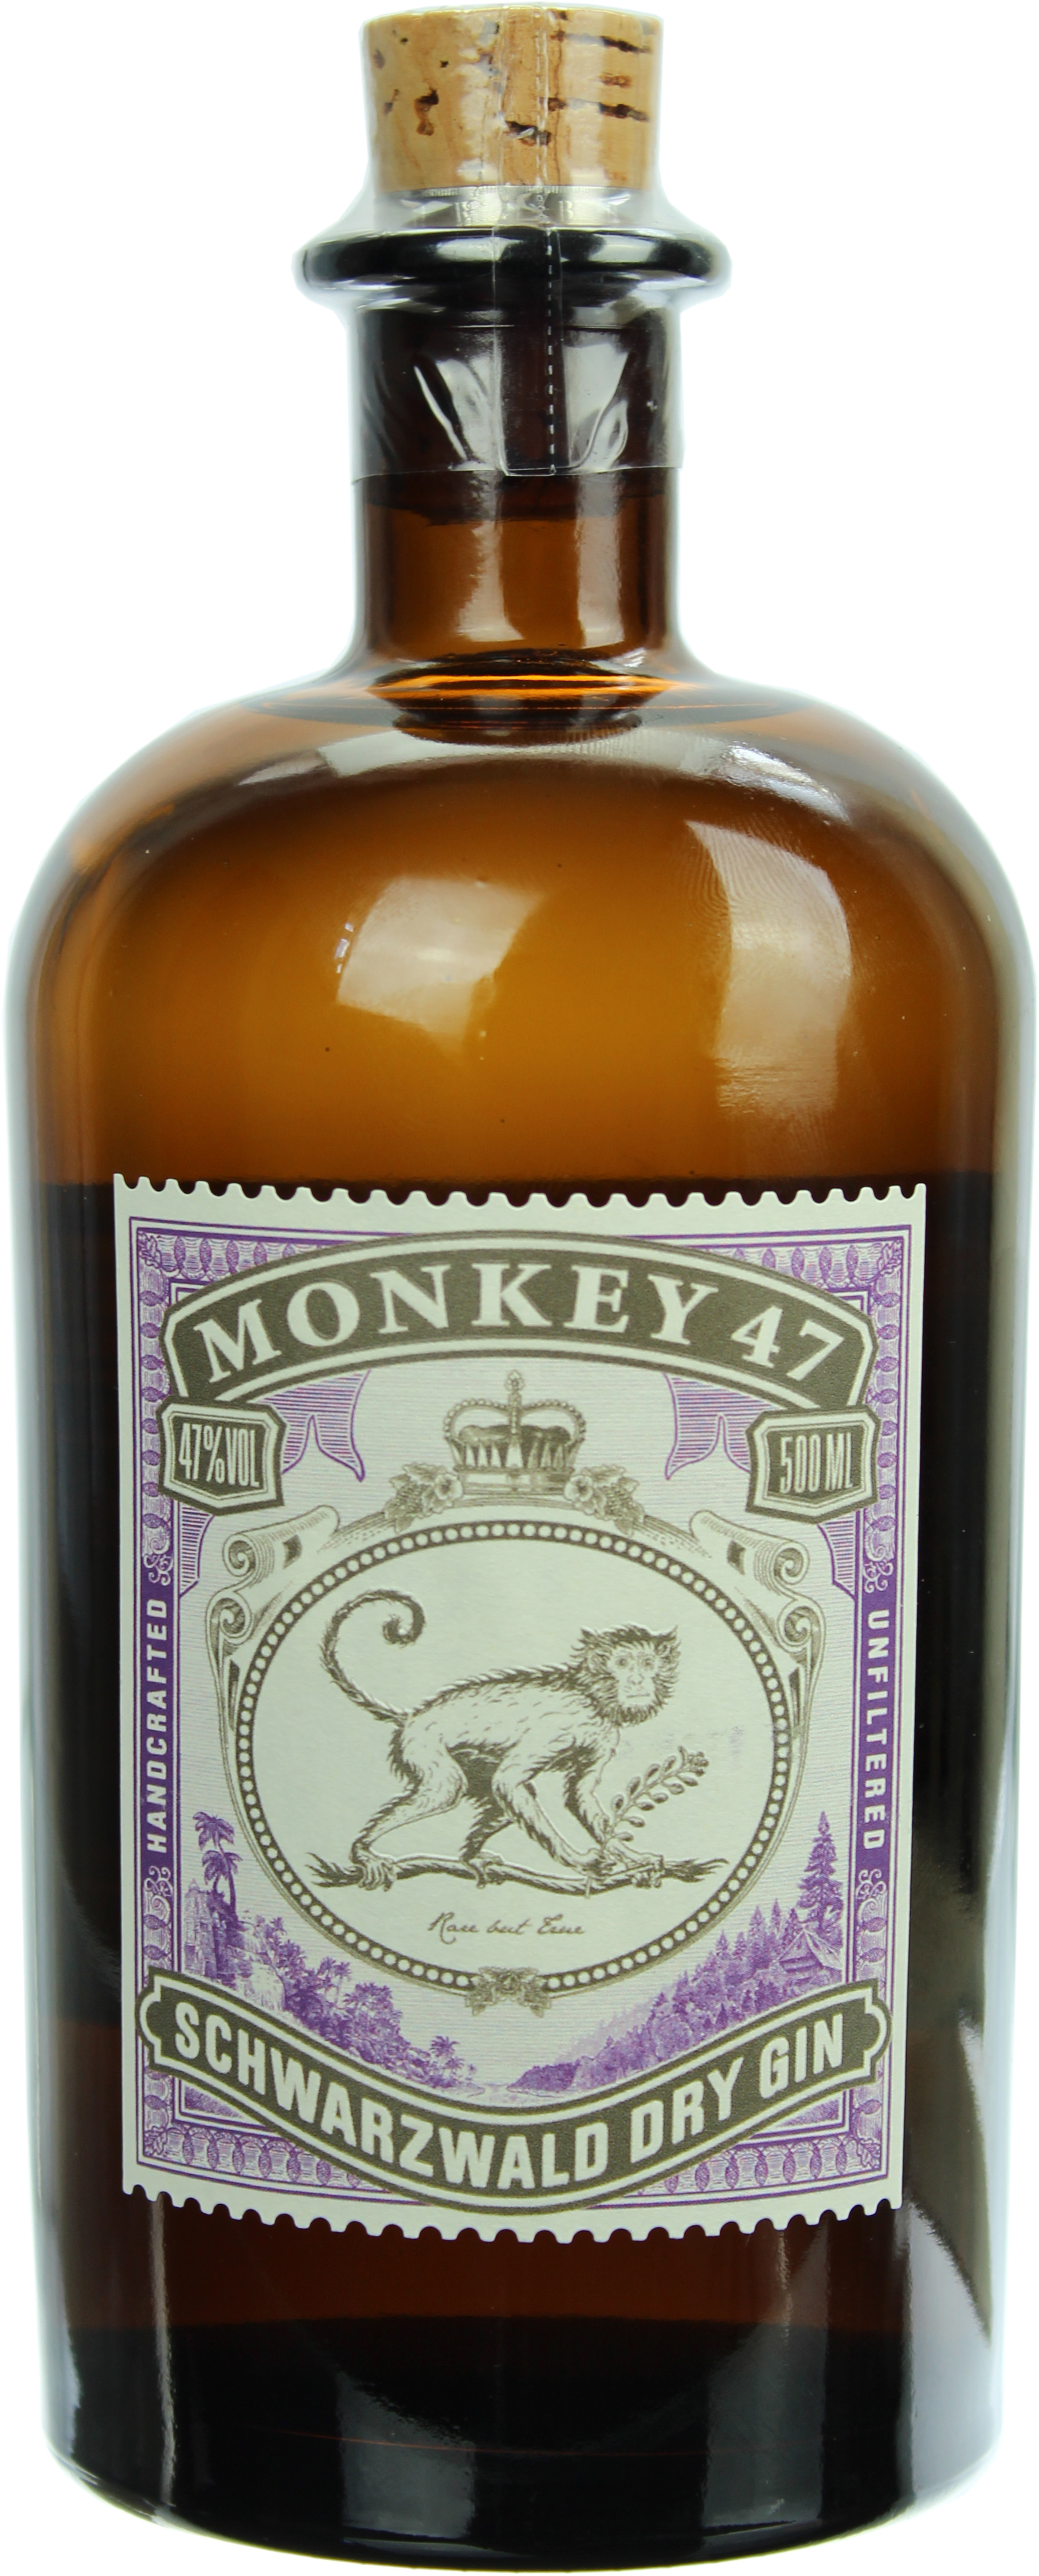 Monkey 47 Schwarzwald Dry Gin 0,5l